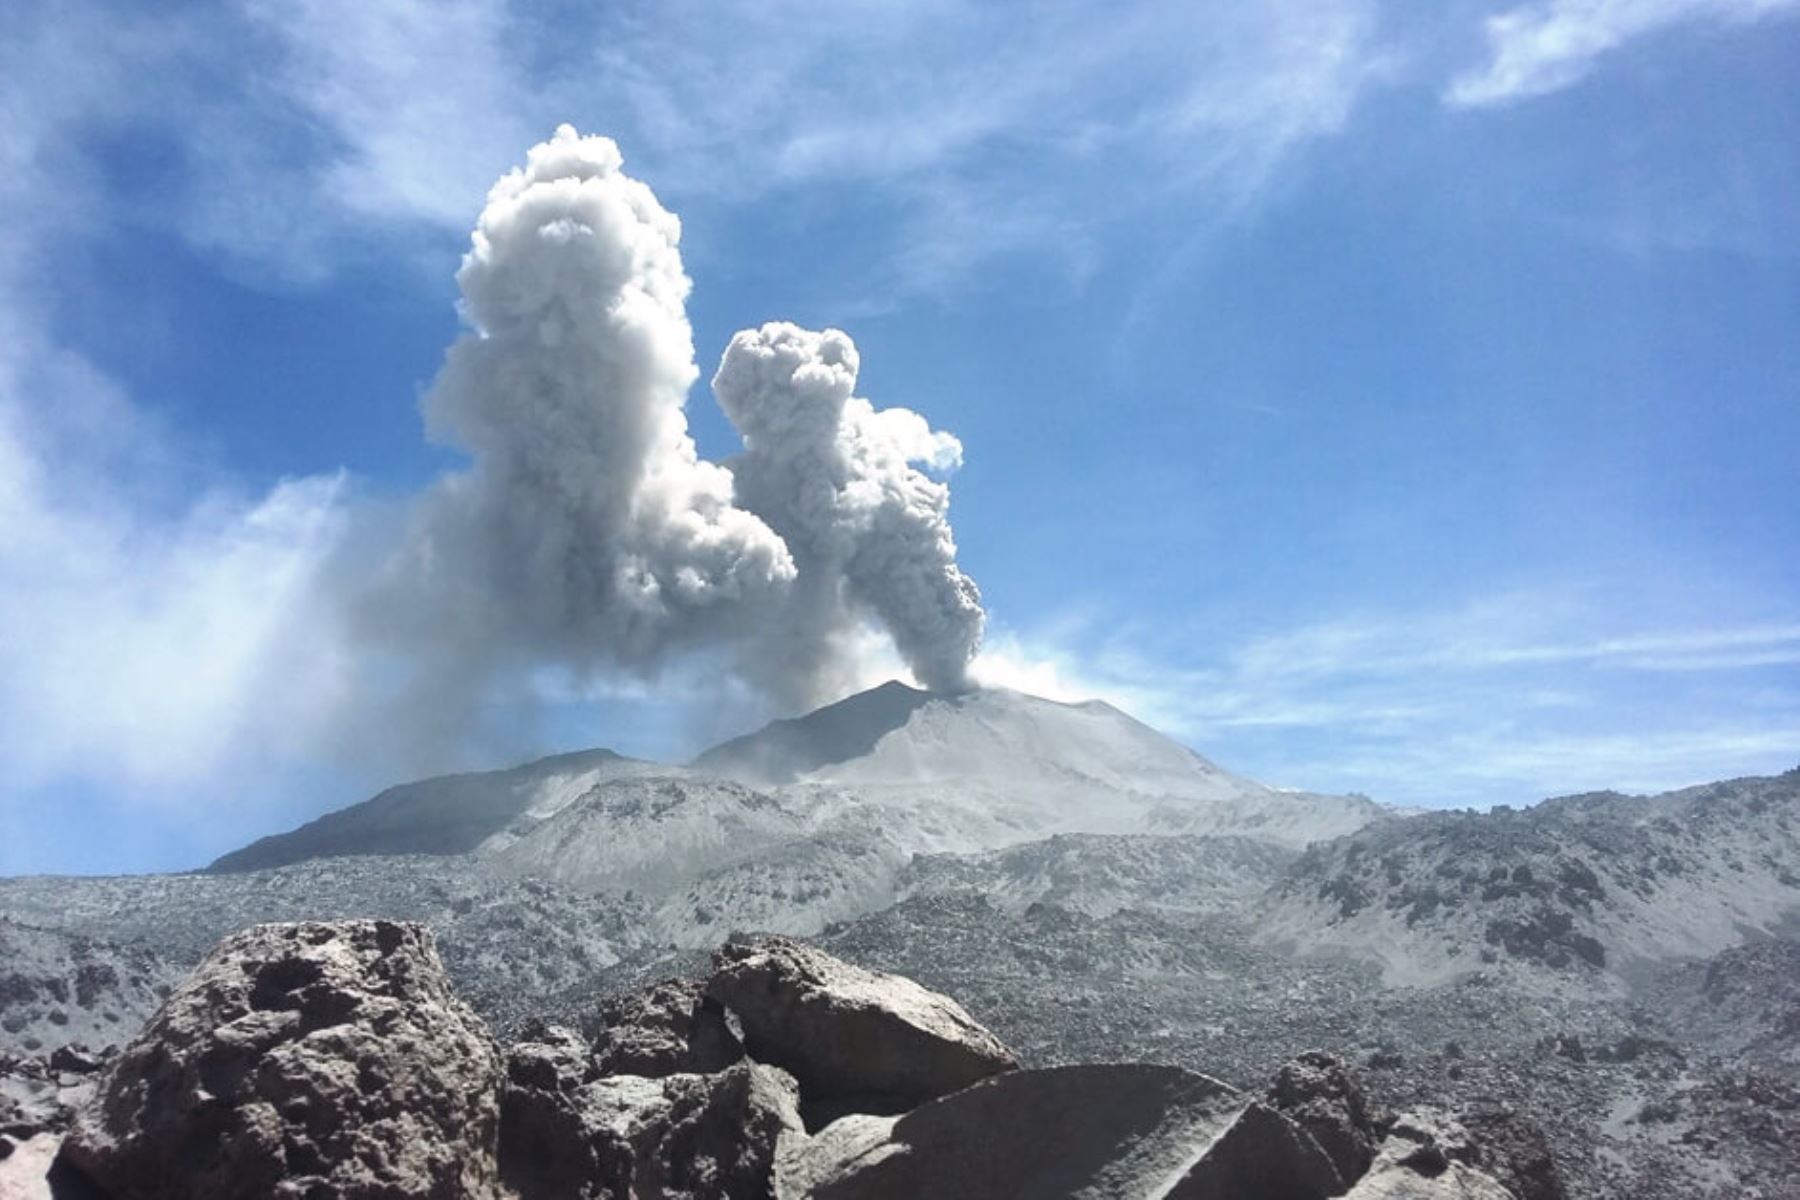 El volcán Sabancaya, ubicado en Arequipa, se mantiene en alerta naranja y continúa con sus niveles moderados, presentando un promedio de 20 explosiones por día, tras el monitoreo de la actividad explosiva de dicho macizo correspondiente a la semana del 19 al 25 de noviembre, informó el Instituto Geofísico del Perú (IGP). ANDINA/Difusión